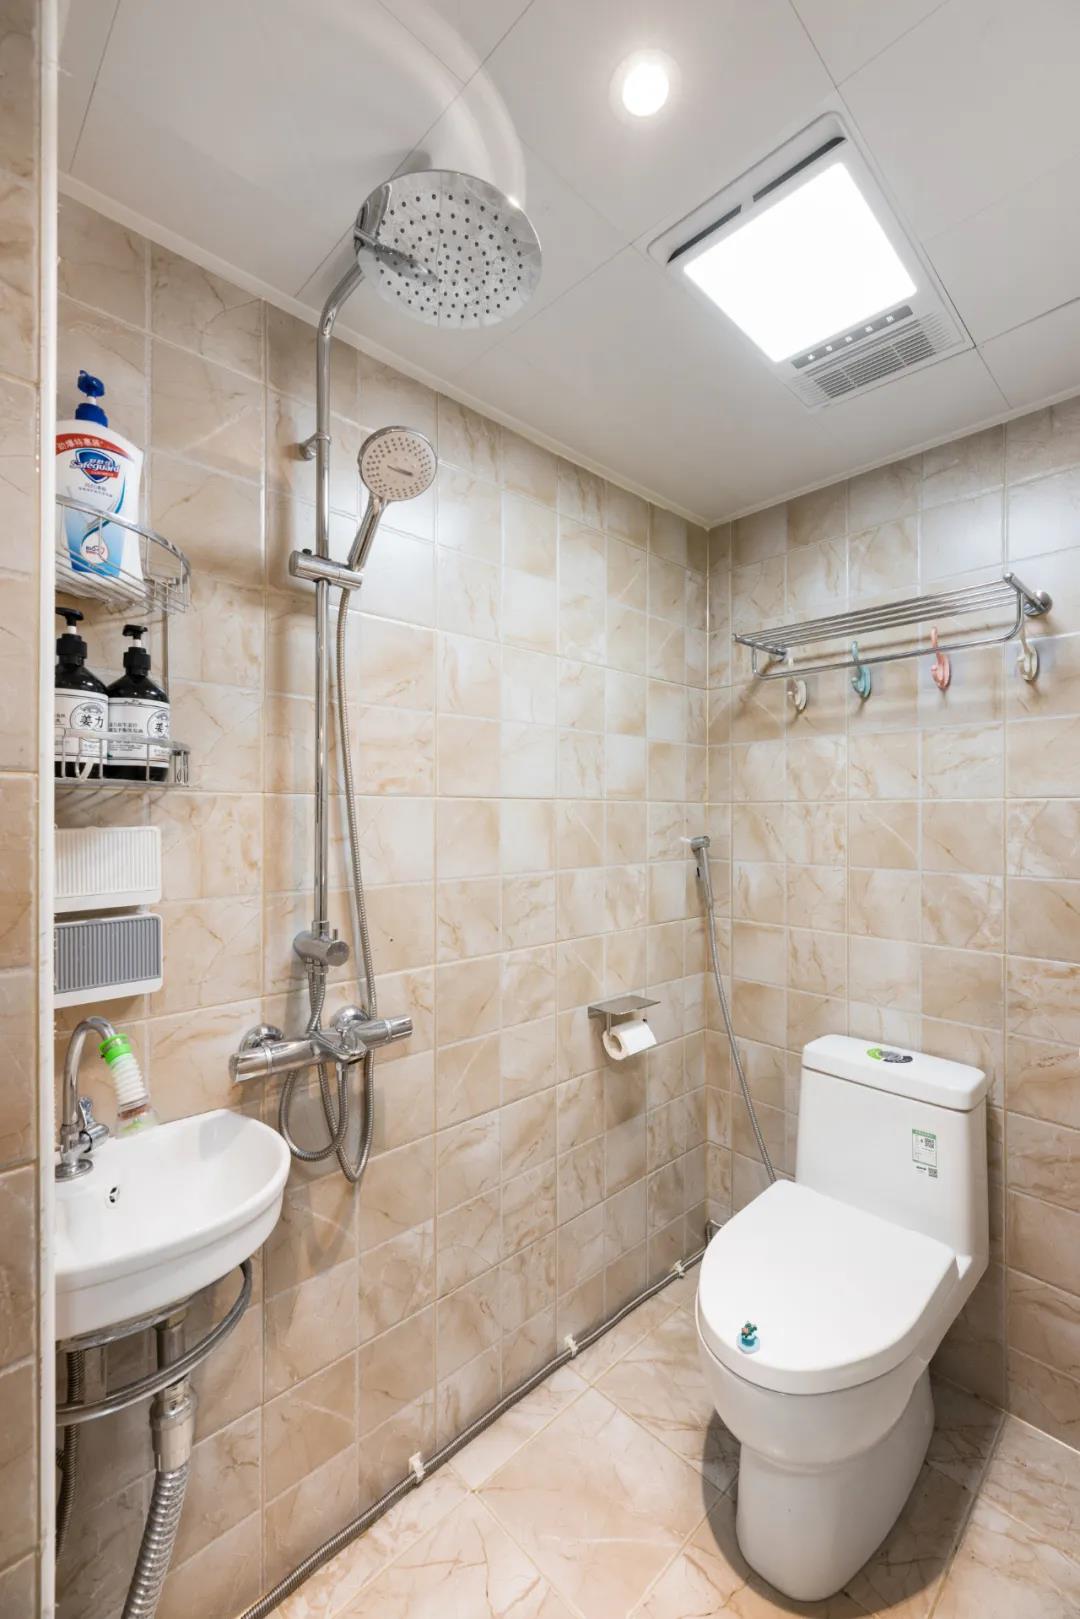 卫生间以米色瓷砖为背景，白色洁具在整个空间显得简约从容而舒适。